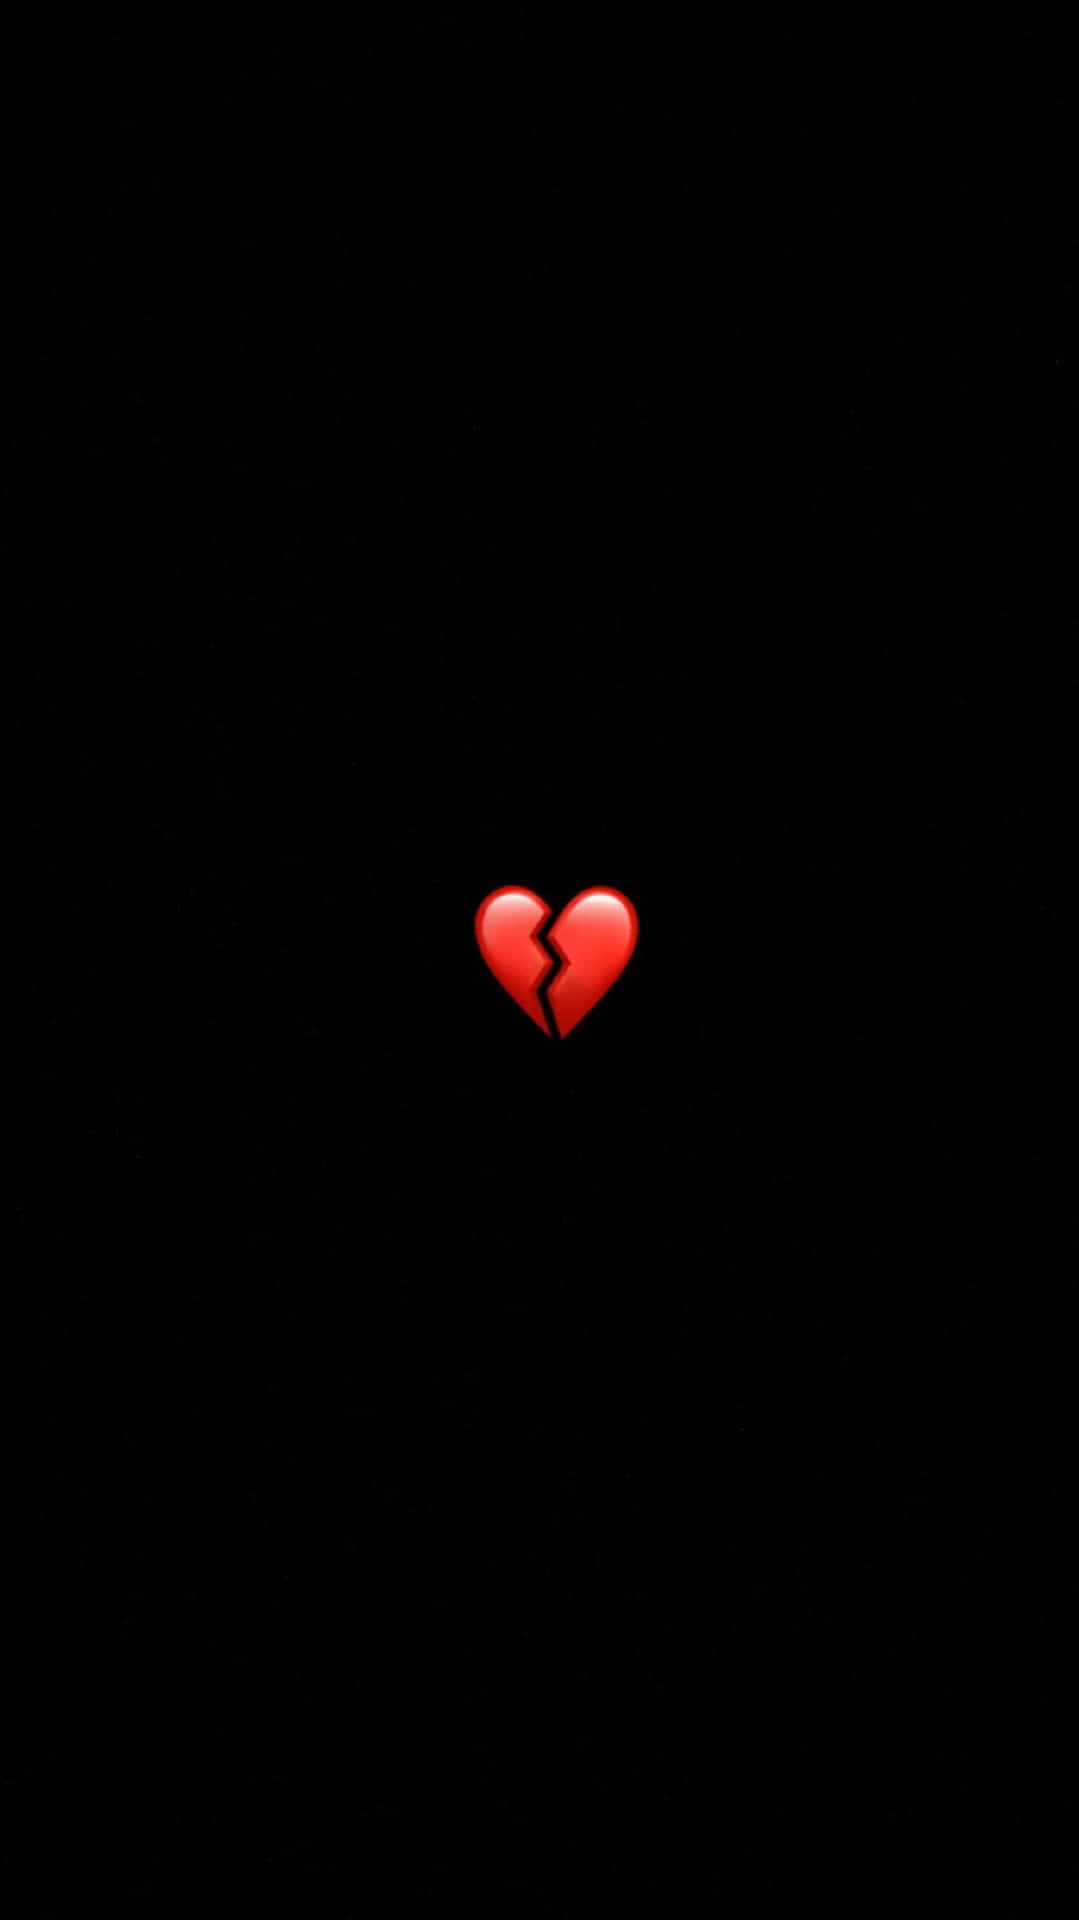 Hình nền emoji trái tim đen - Trái tim đen không chỉ là biểu tượng của sự đau khổ, nó còn mang trong mình một vẻ đẹp đầy lôi cuốn và bí ẩn. Hình nền emoji trái tim đen sẽ khiến bạn trở nên thật phóng khoáng, hoang dại và tiềm ẩn những cảm xúc sâu thẳm trong tình yêu của mình.